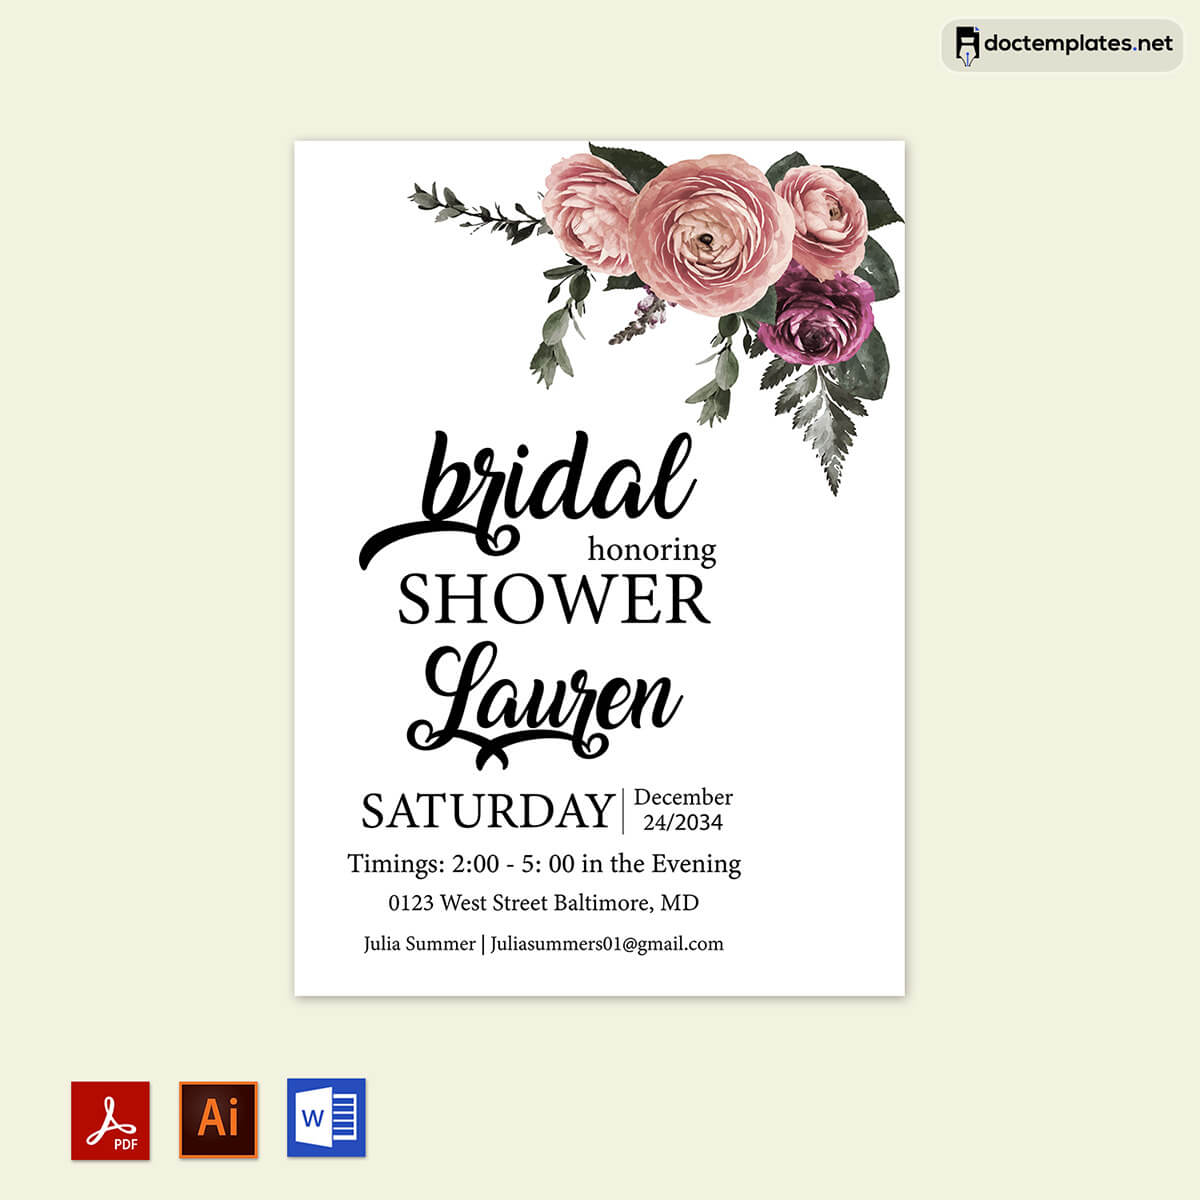 bridal shower checklist
01